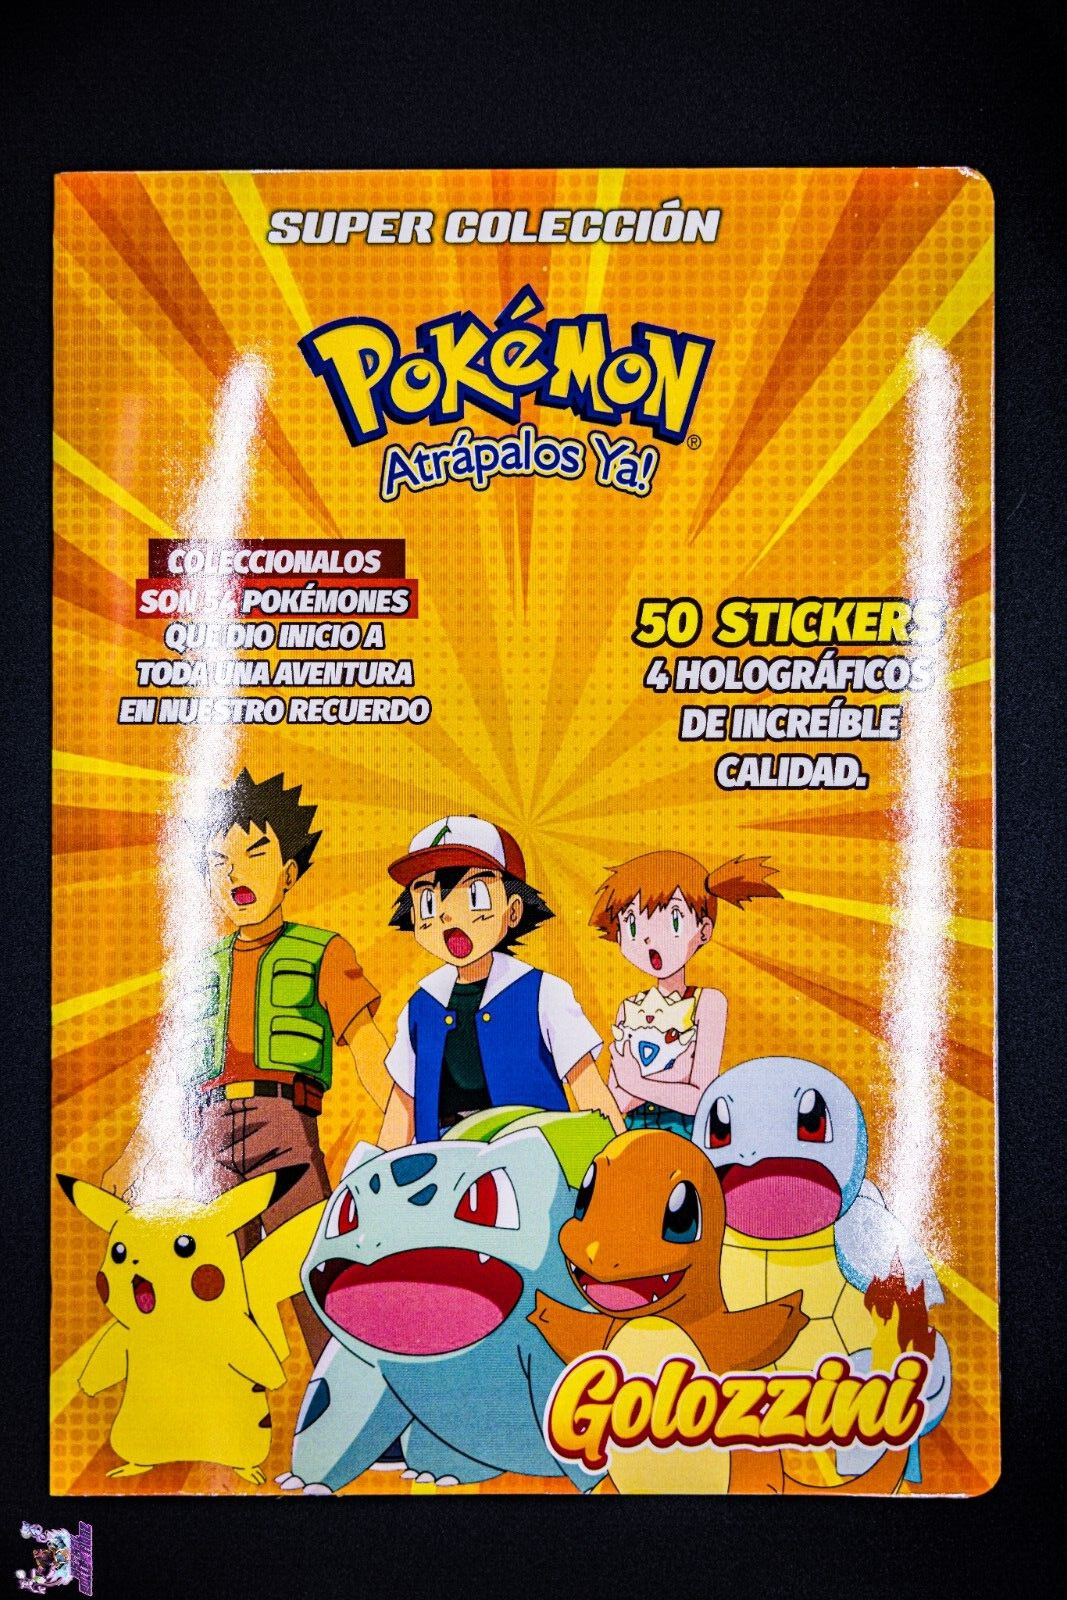 Golozzini Pokemon Master set Album Pokemon Stickers Chicle Completo